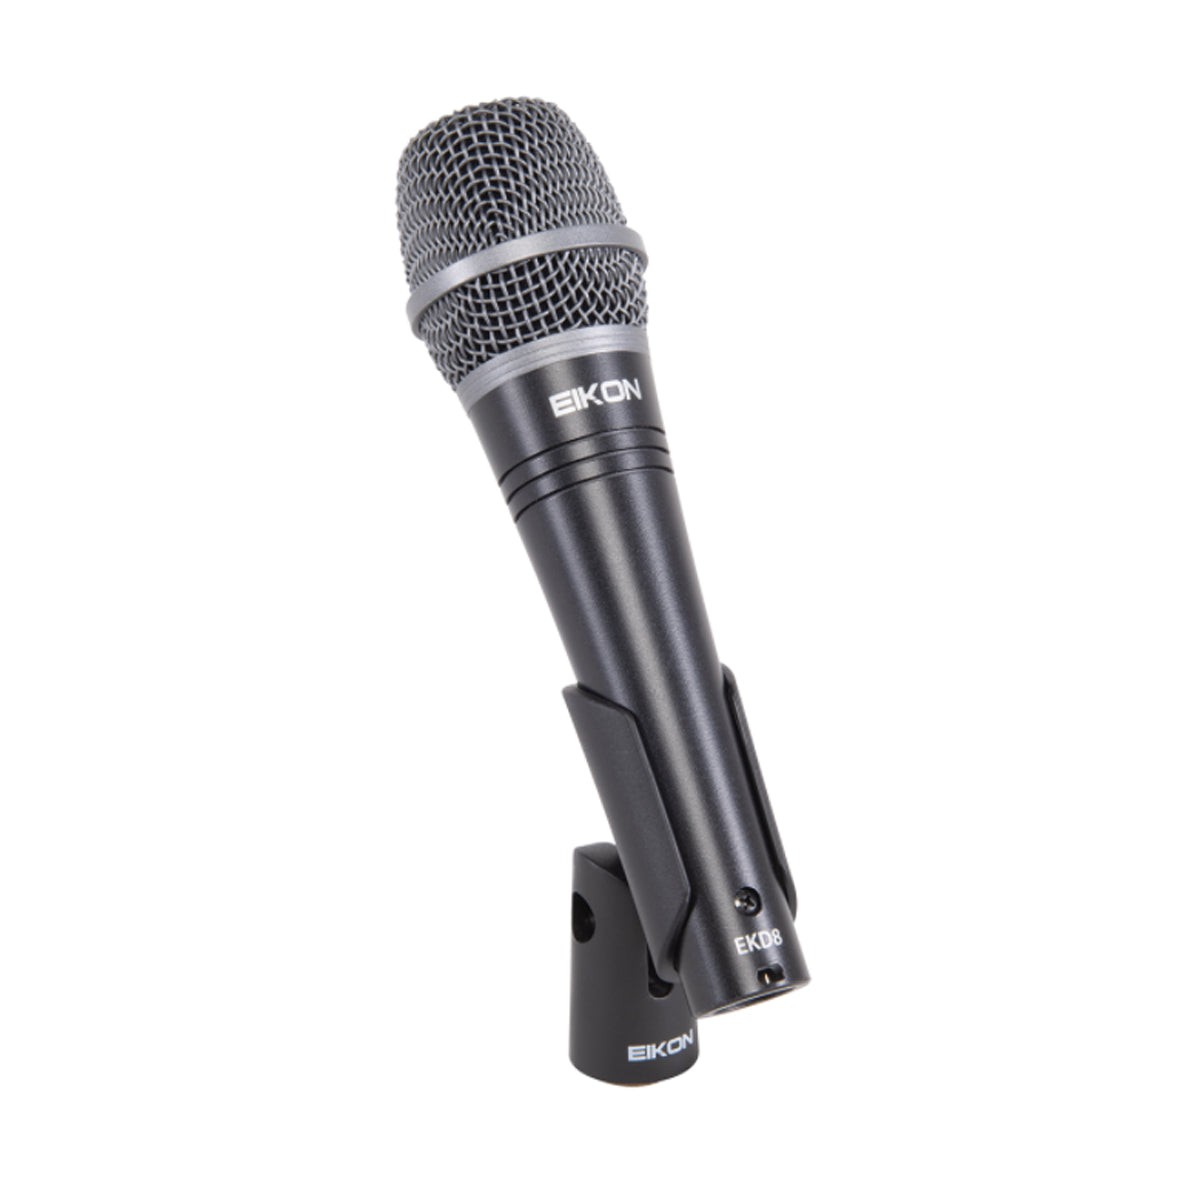 Eikon EKD8 Dynamic Microphone Vocal Handheld Mic w/ Bag